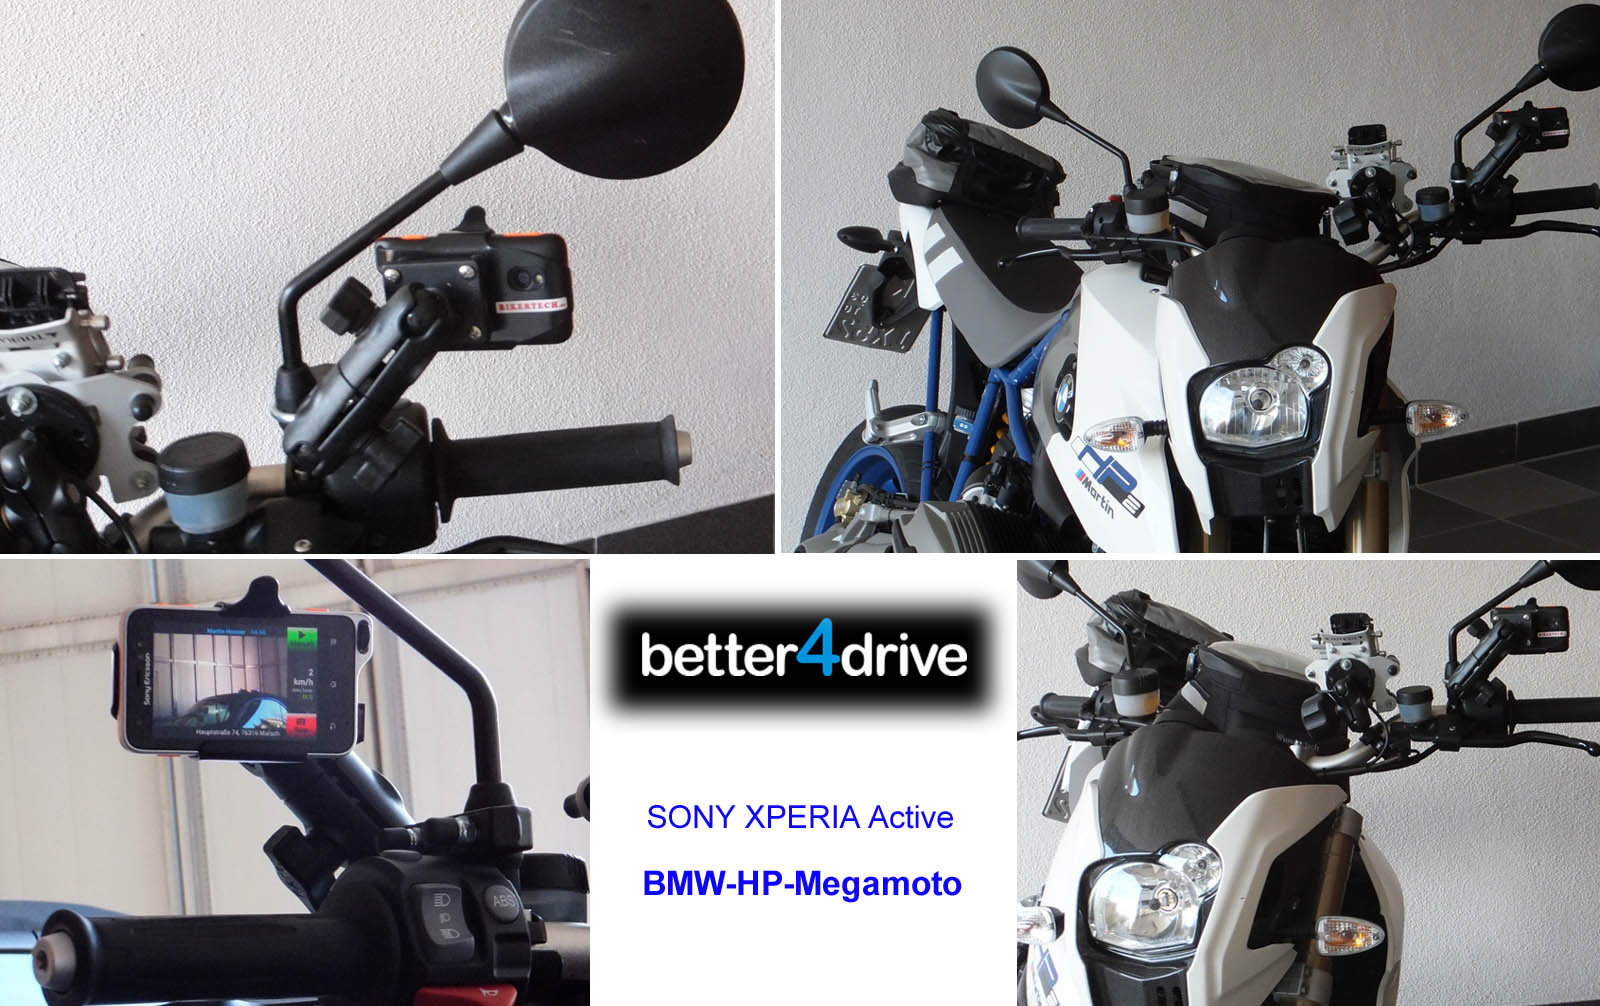 Schliessen von Sony-Xperia-Active_BMW-HP-Megamoto_RAM-Kamera-1_Honner.jpg